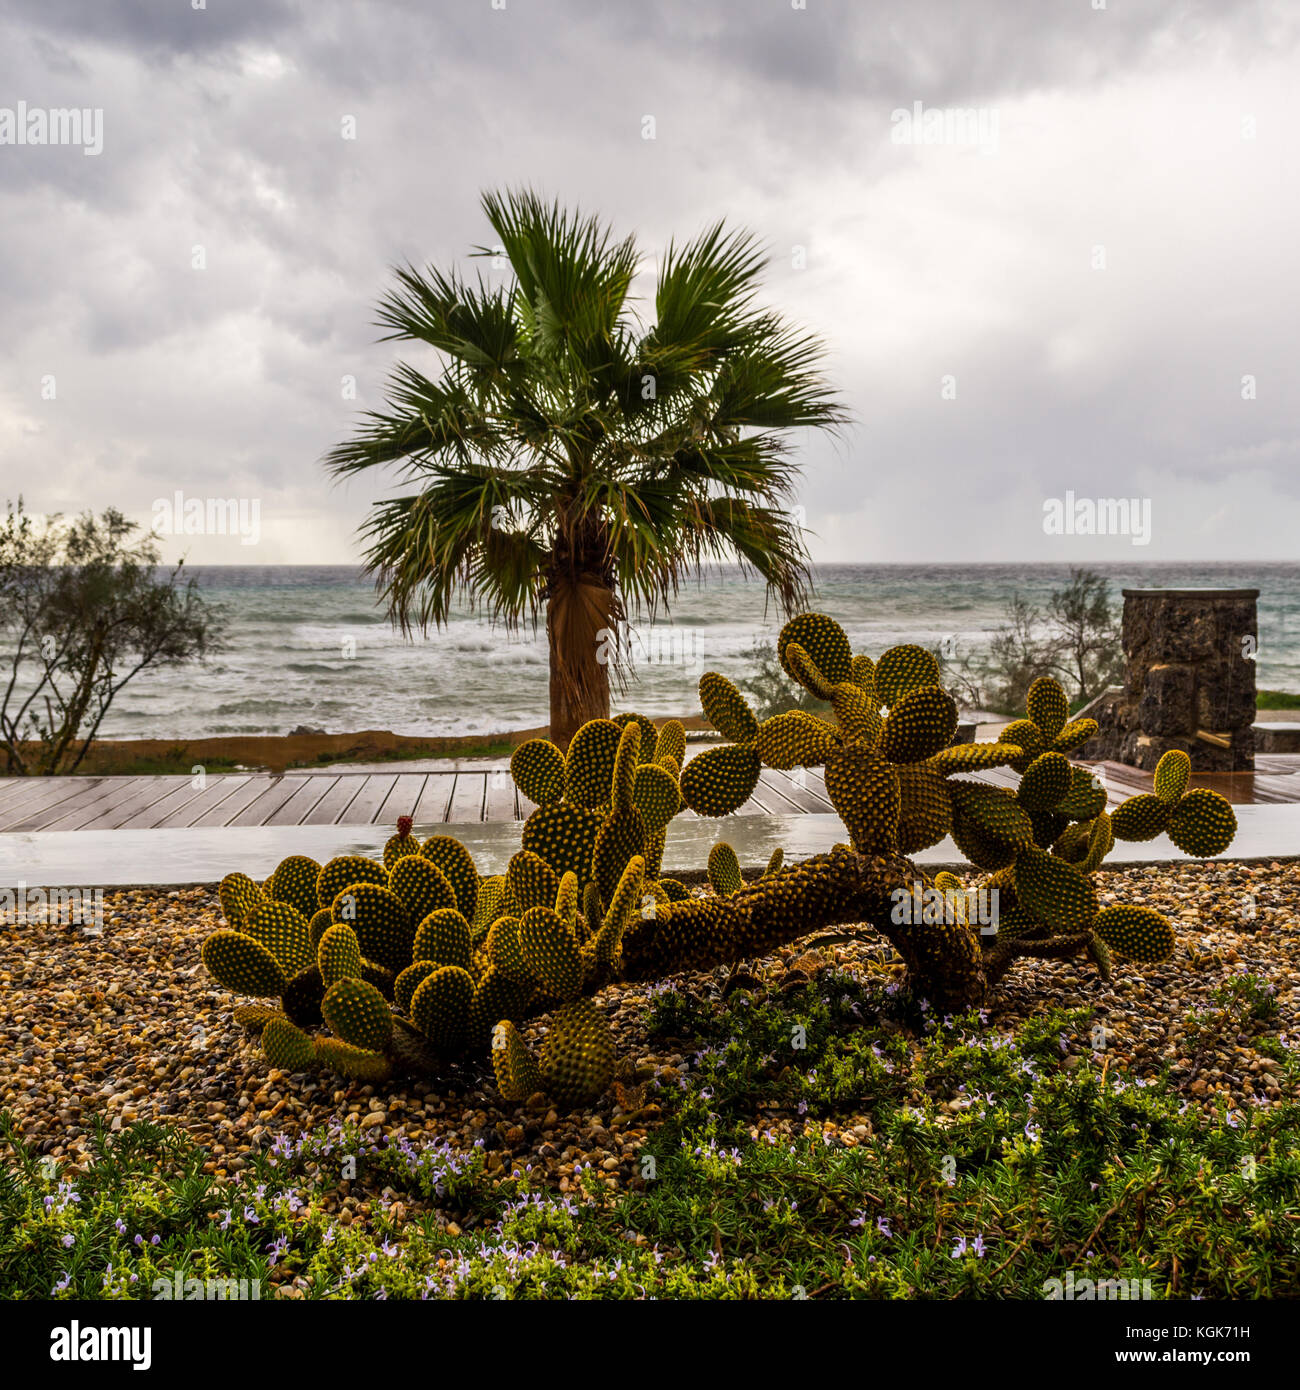 Vue du jardin donnant sur la mer, sur un jour de tempête à l'avant-plan d'un cactus Banque D'Images